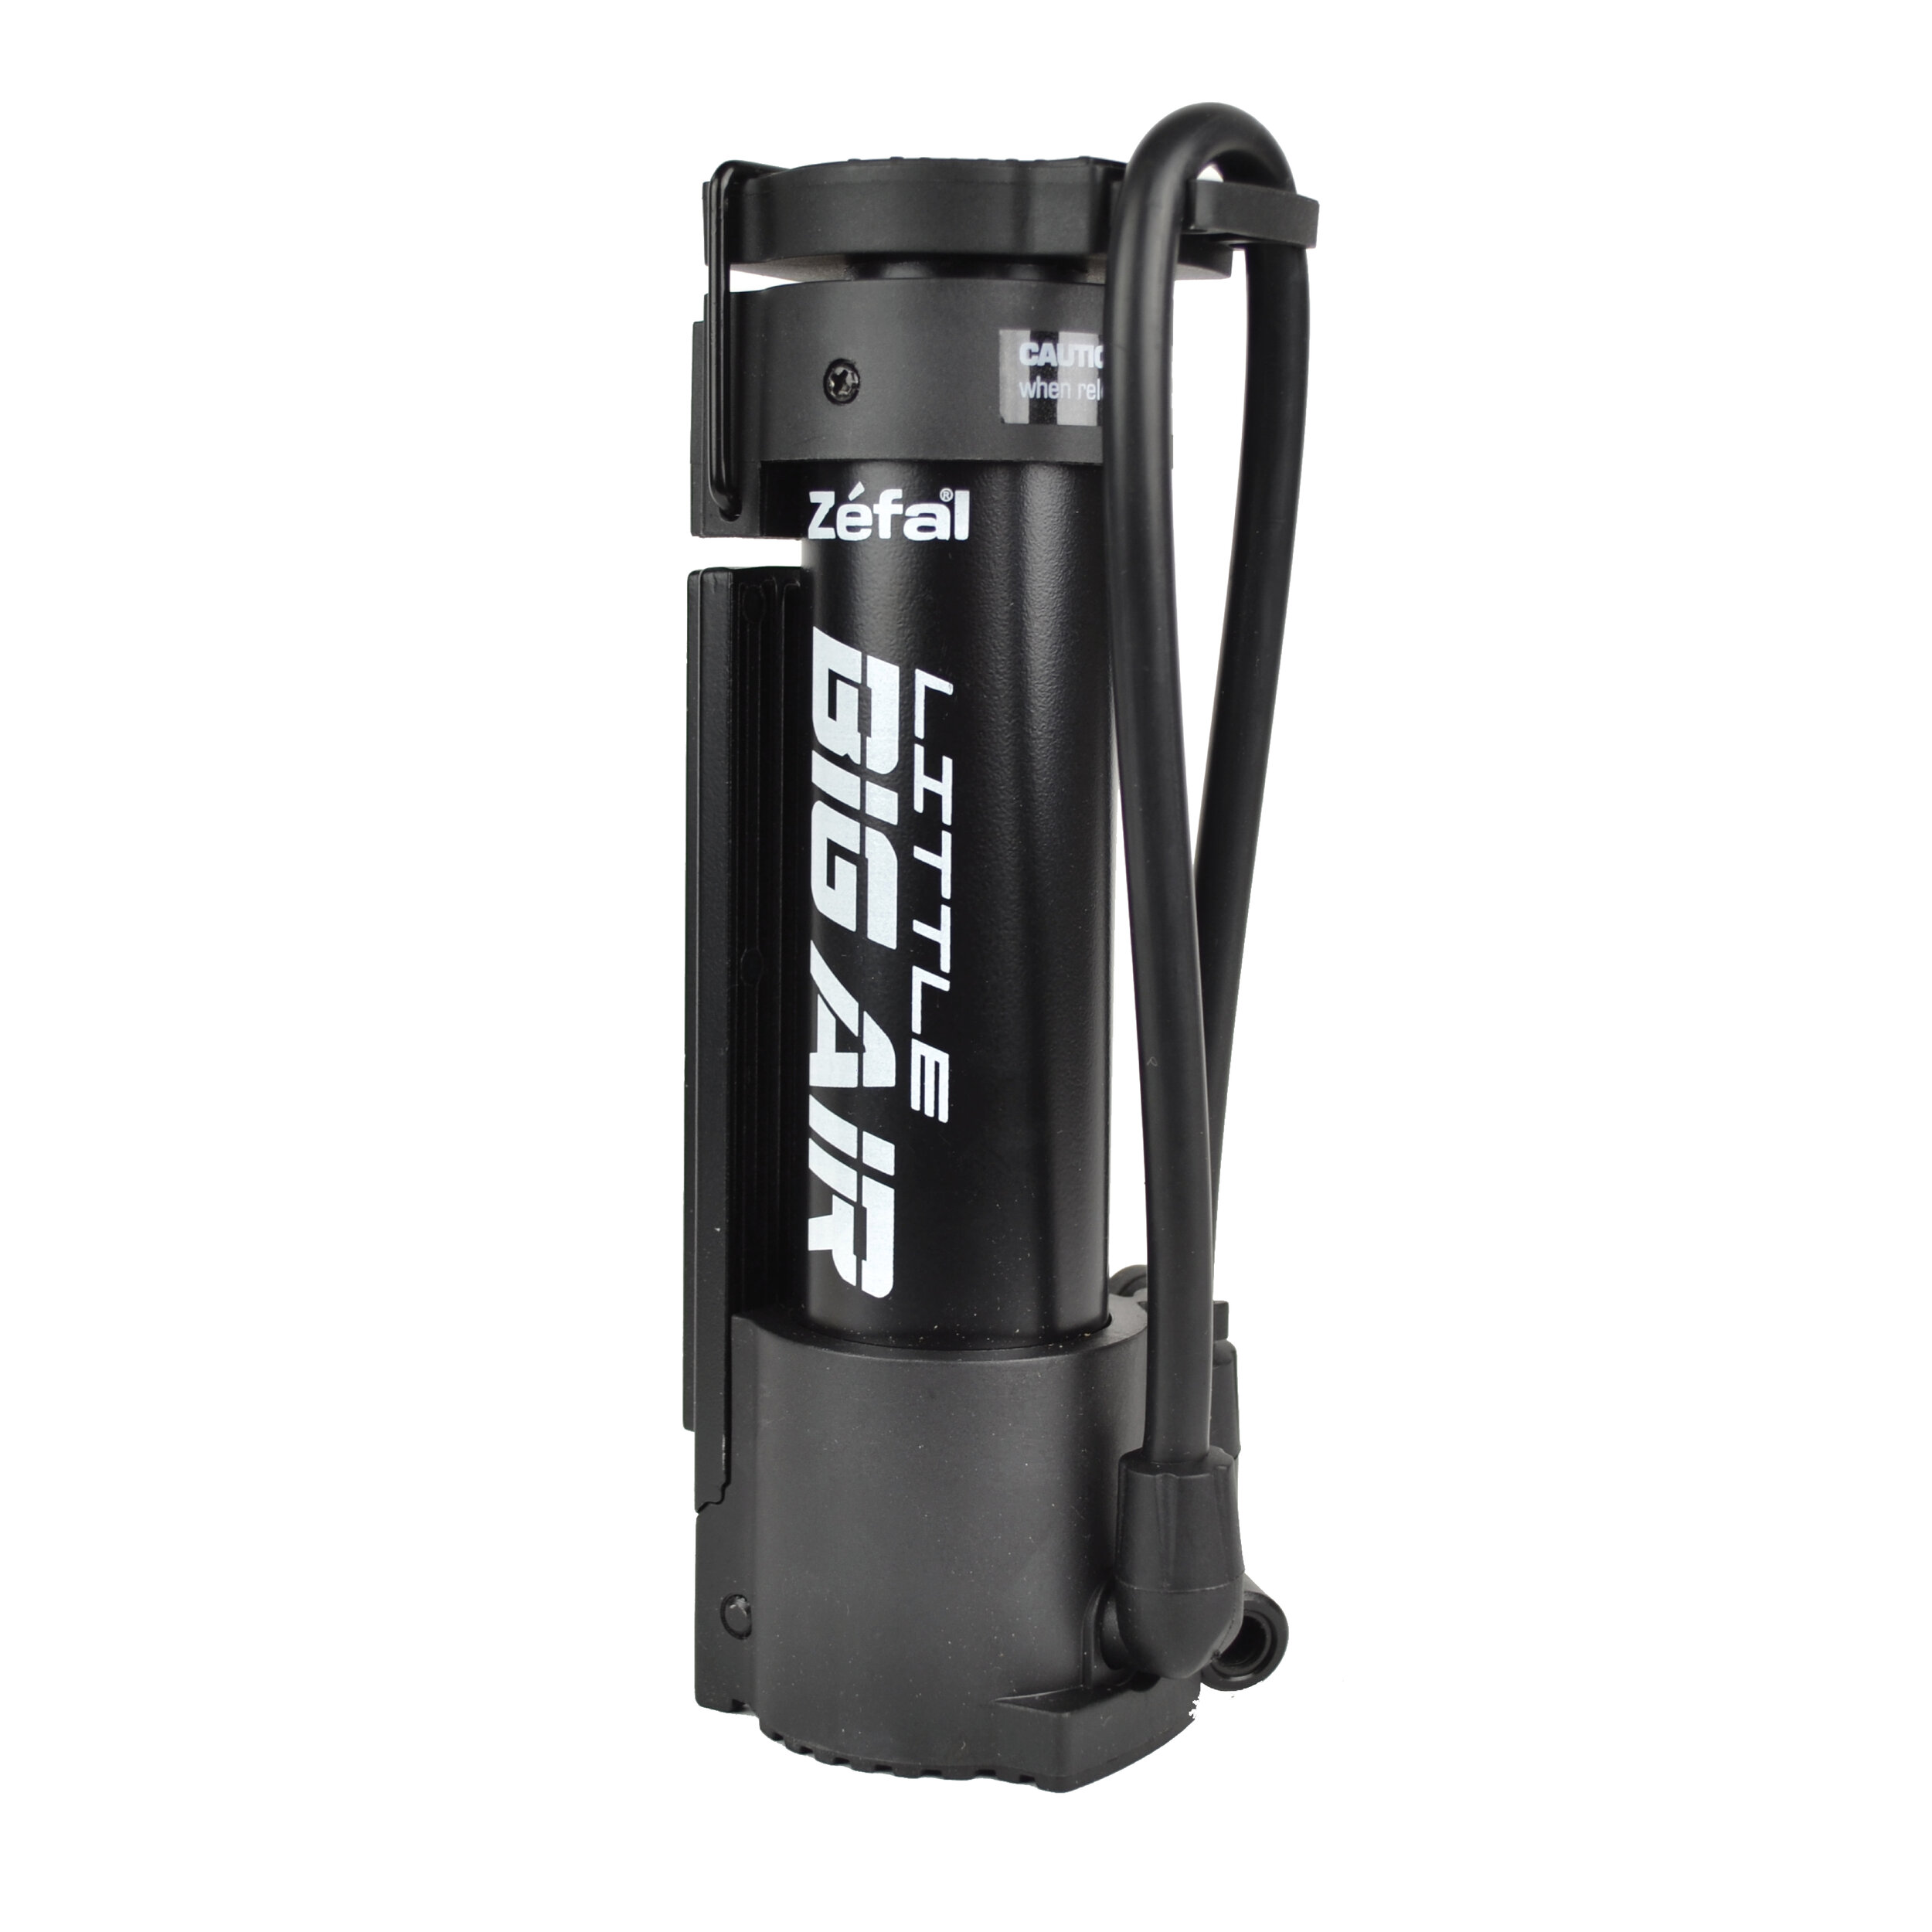 Zefal Big Air Heavy Duty Bicycle Floor Pump - Super Fast Fill